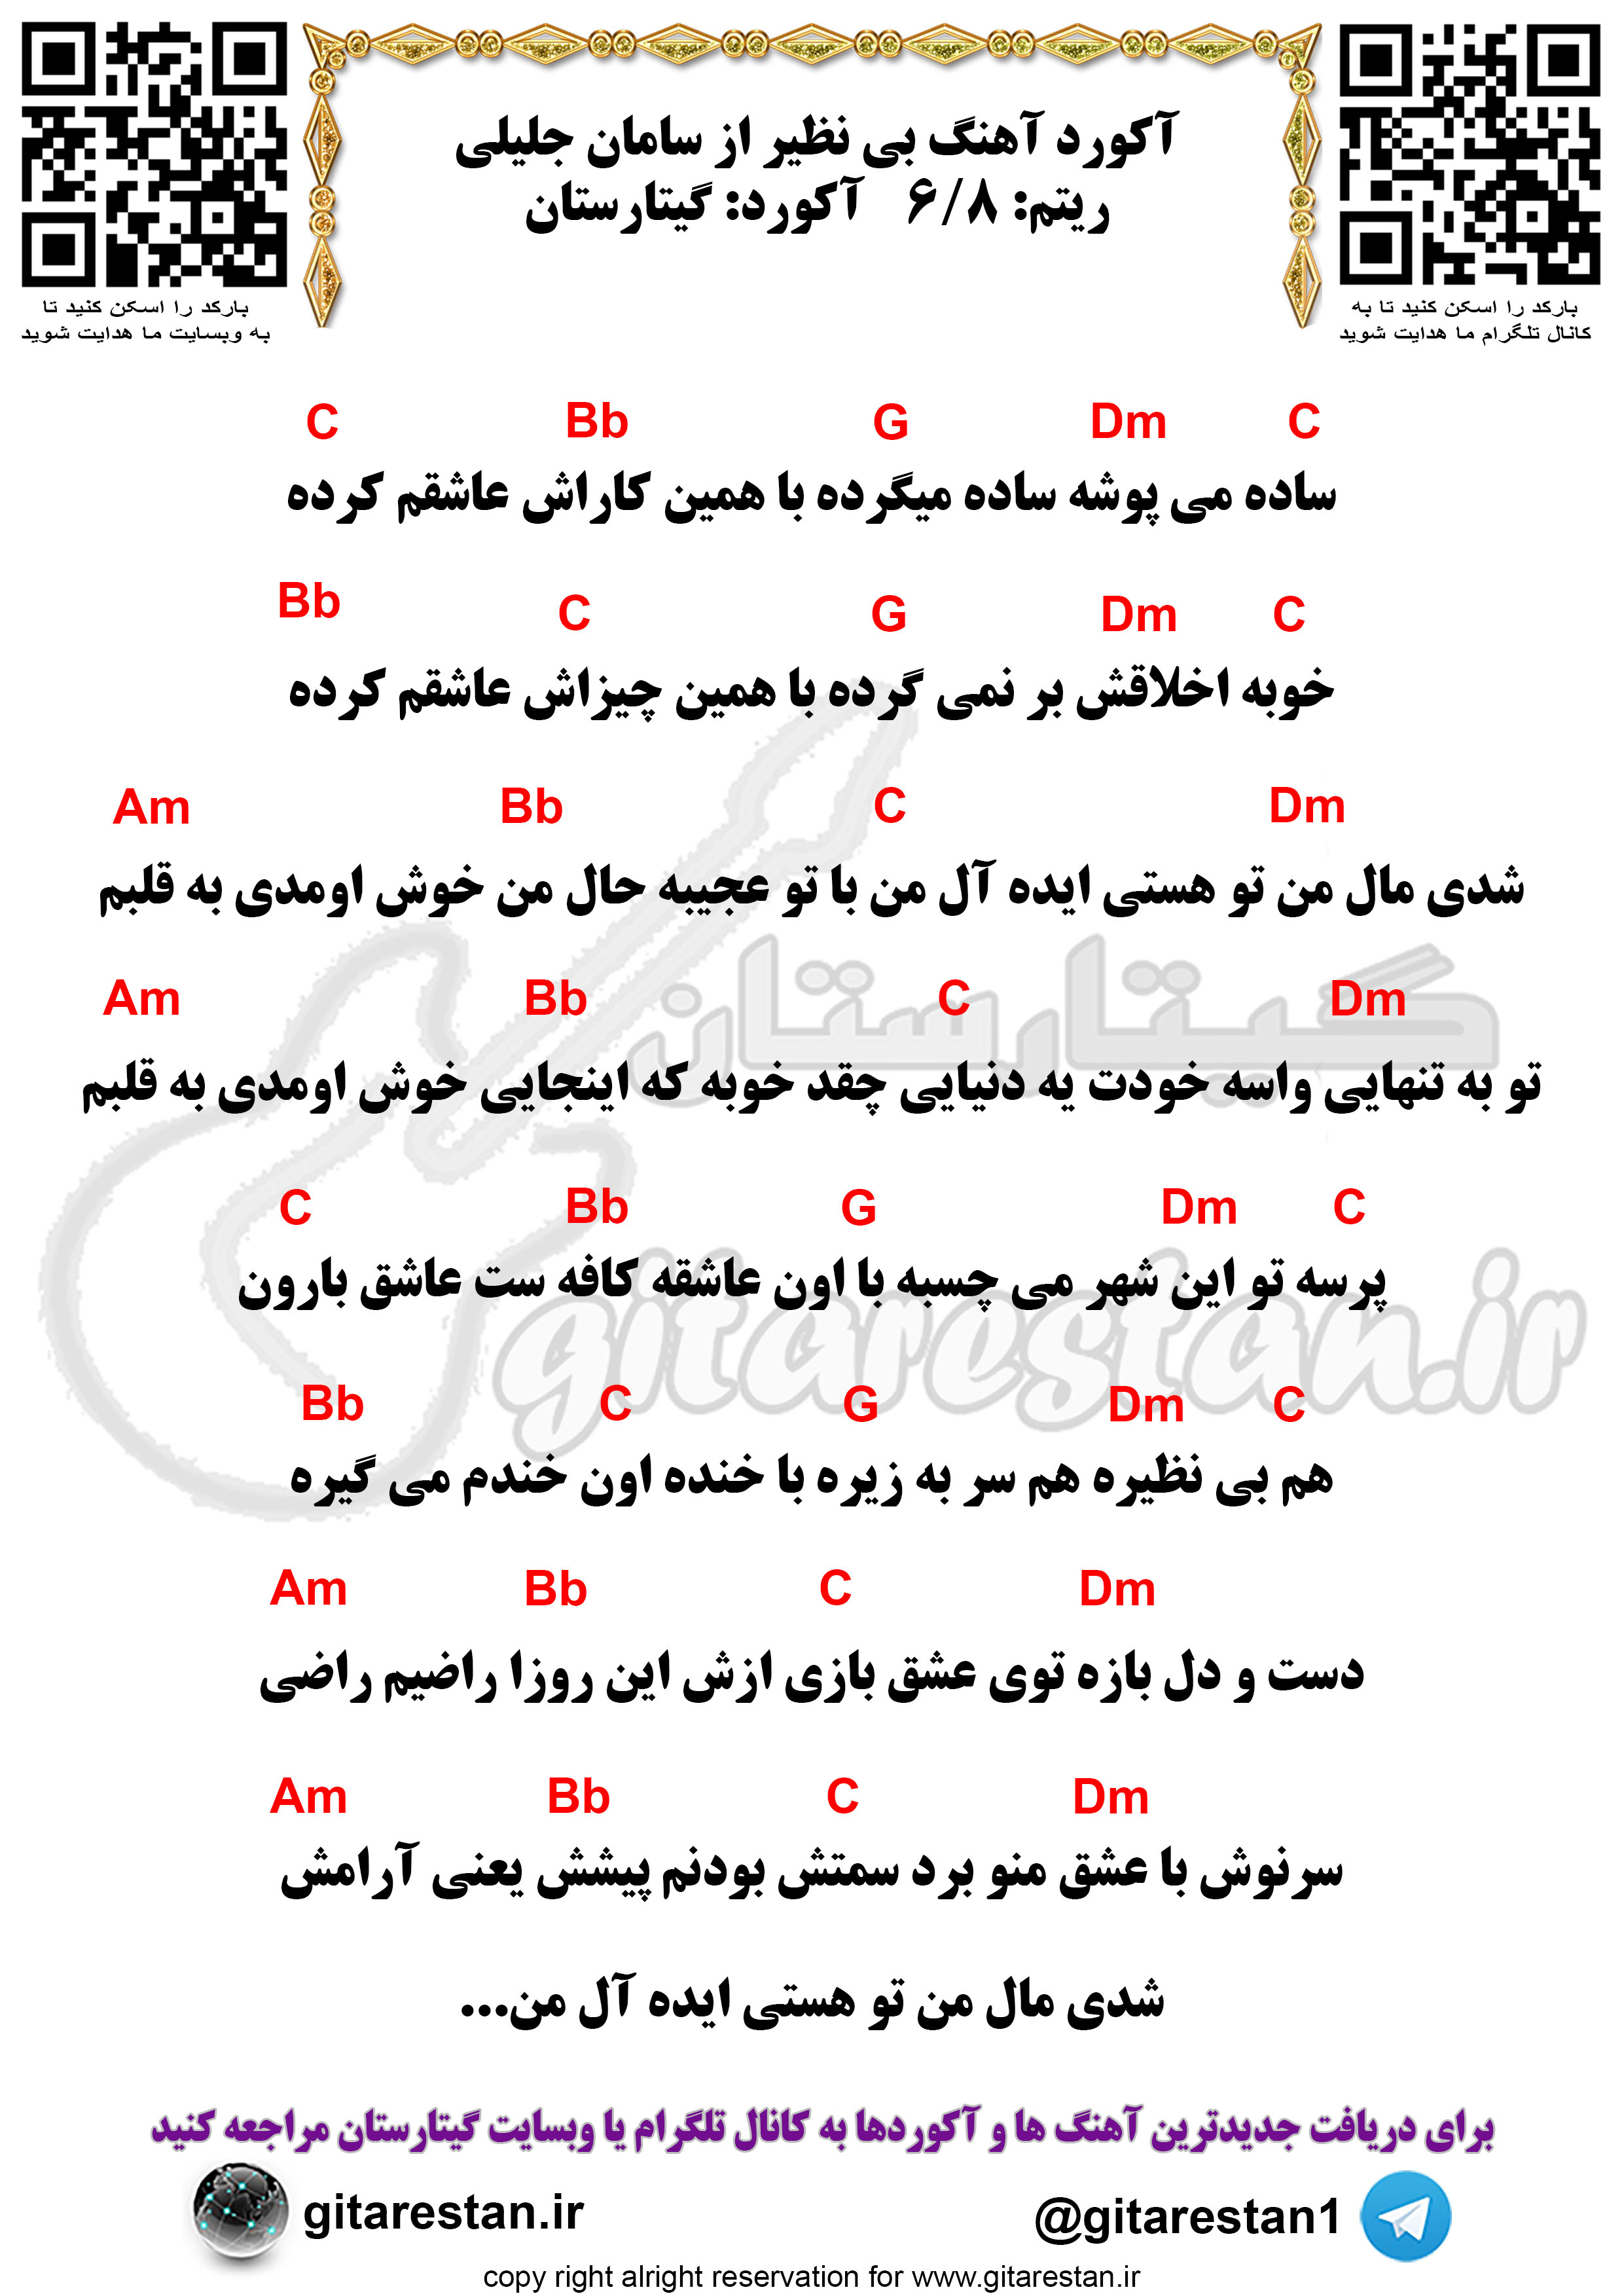 آکورد بی نظیر سامان جلیلی - گیتارستان